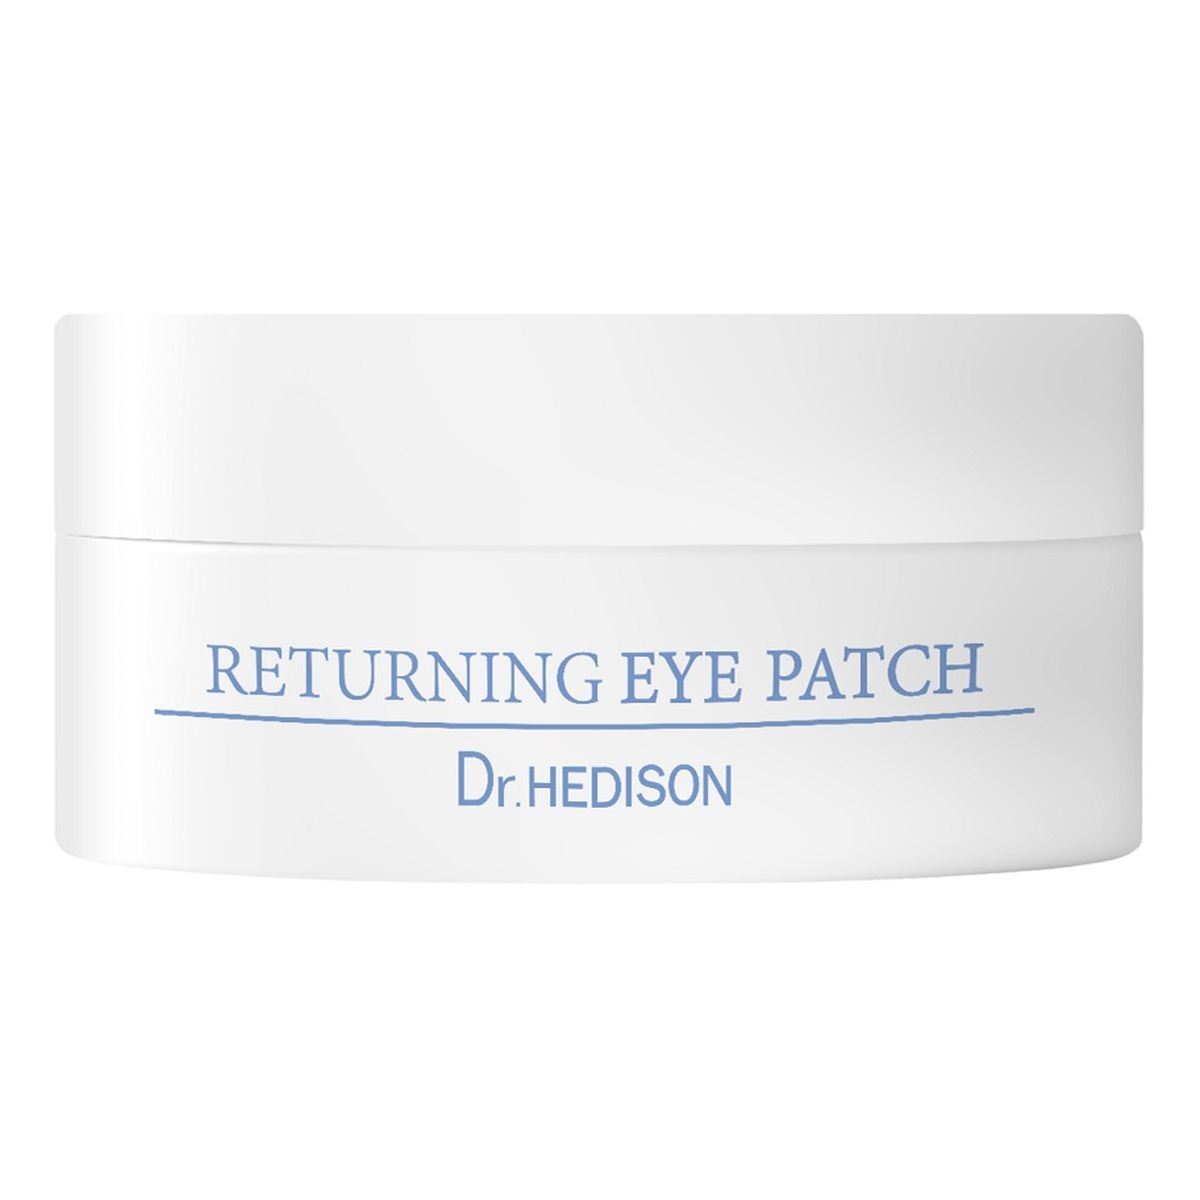 Dr.HEDISON Returning eye patch przeciwzmarszczkowe i odżywiające płatki pod oczy 60szt.